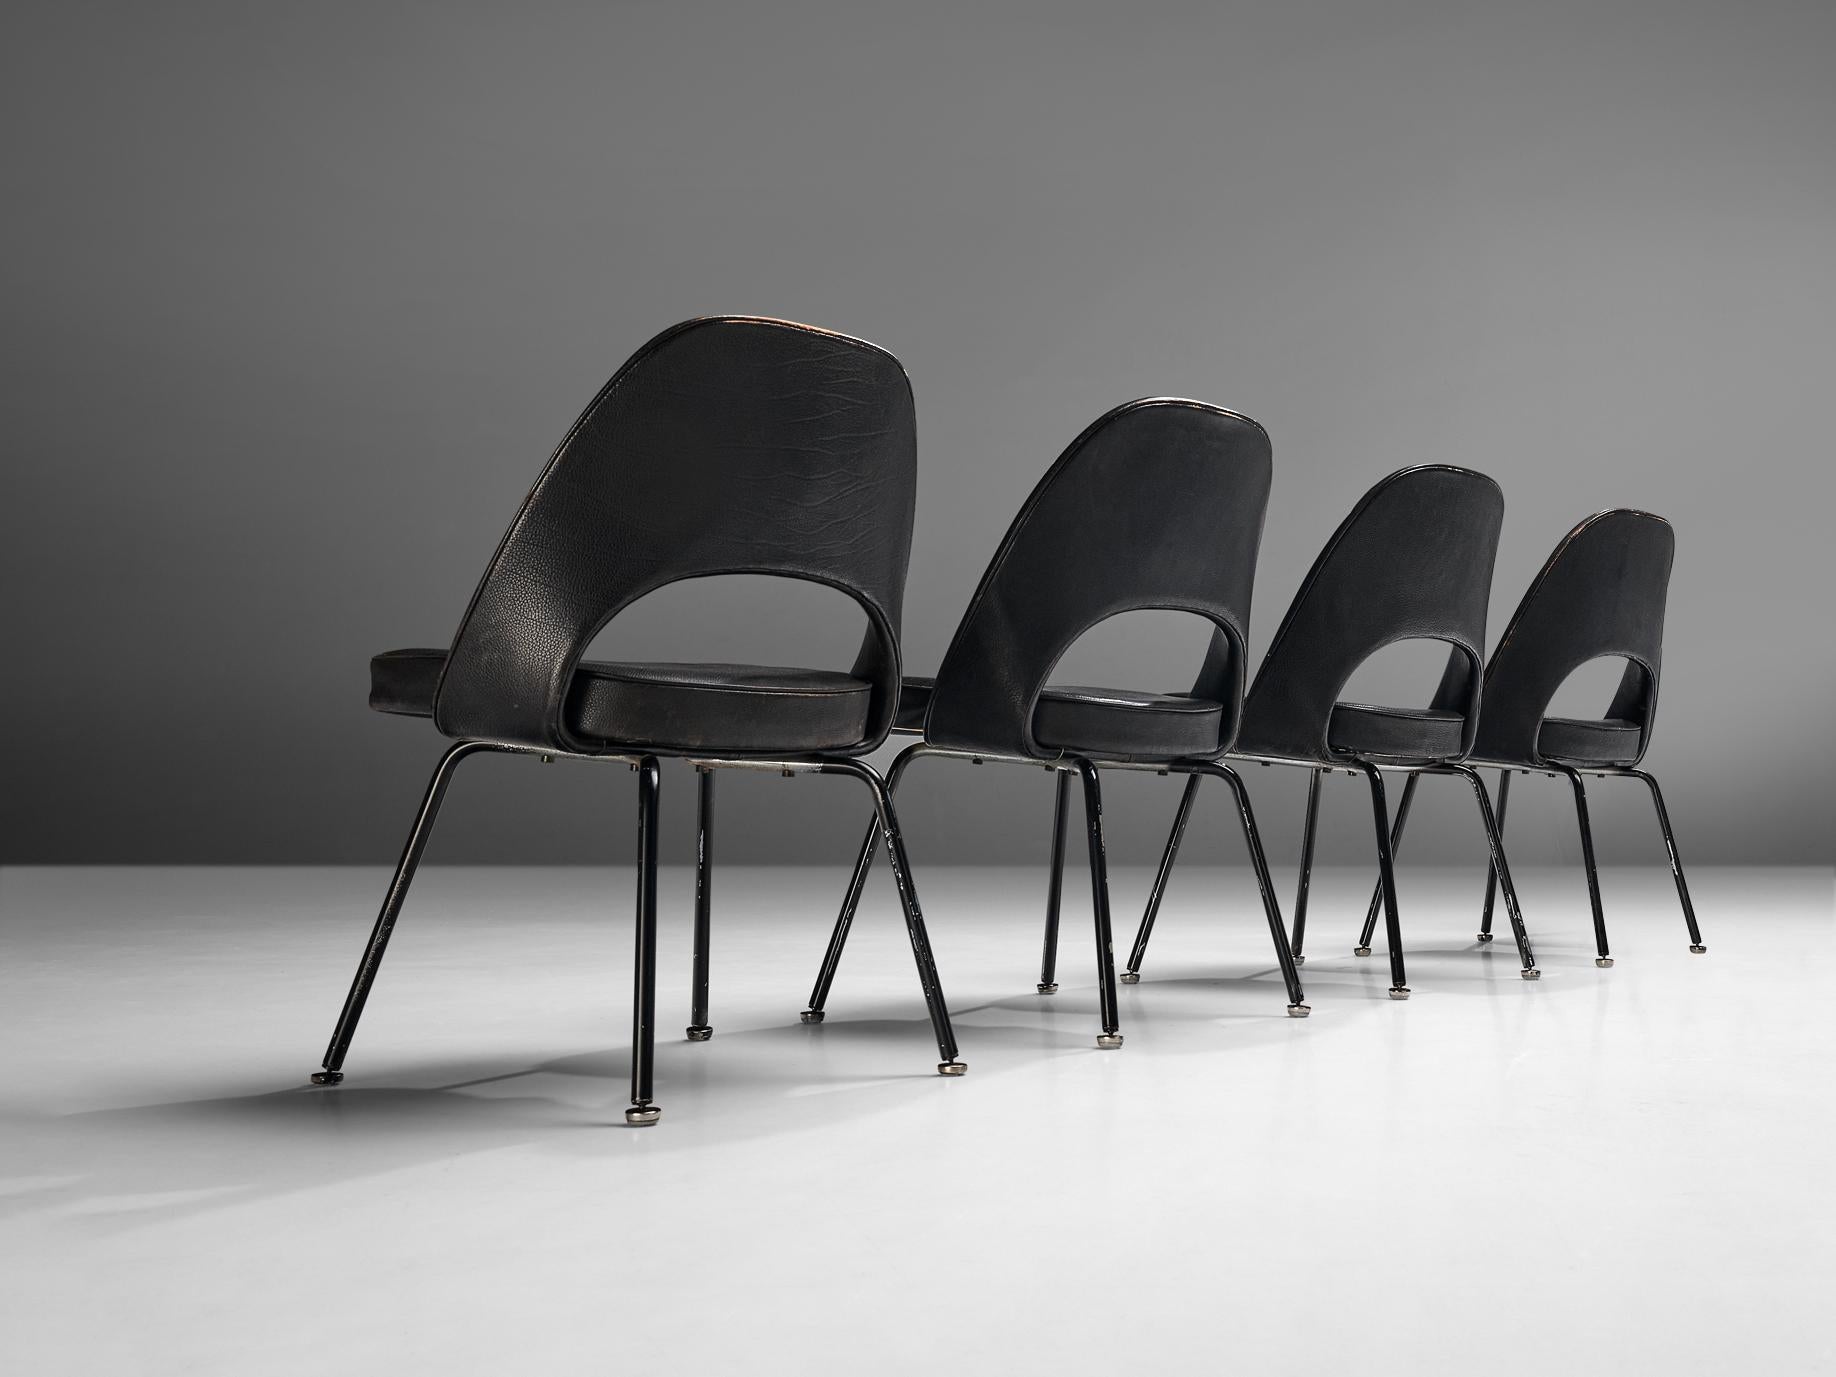 Eero Saarinen für Knoll International, vier Stühle Modell 72, Chrom und Leder, Vereinigte Staaten, 1948. 

Satz von vier organisch geformten Stühlen, entworfen von Eero Saarinen. Eine fließende, skulpturale Form A. Dieses zeitlose und vielseitige